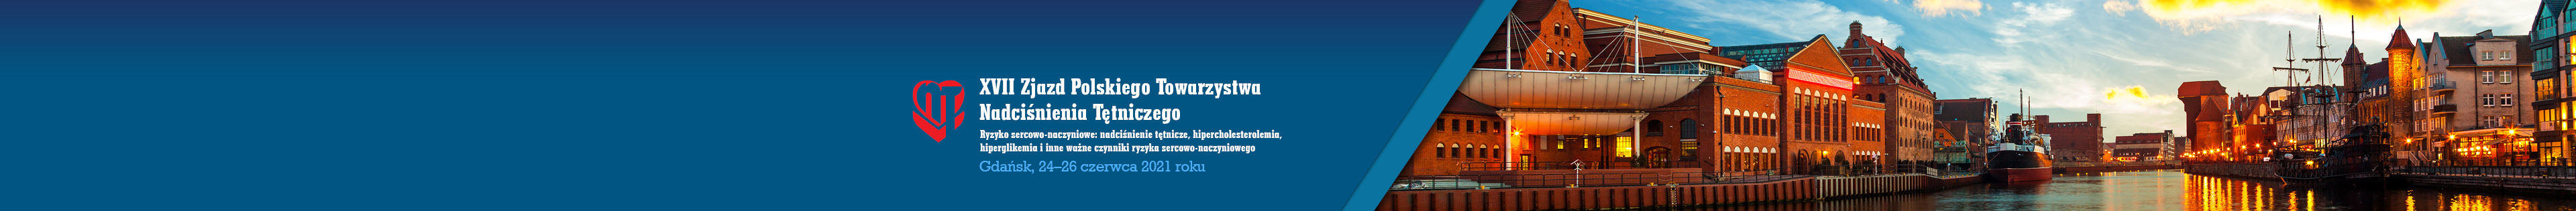 XVII Zjazd Polskiego Towarzystwa Nadciśnienia Tętniczego